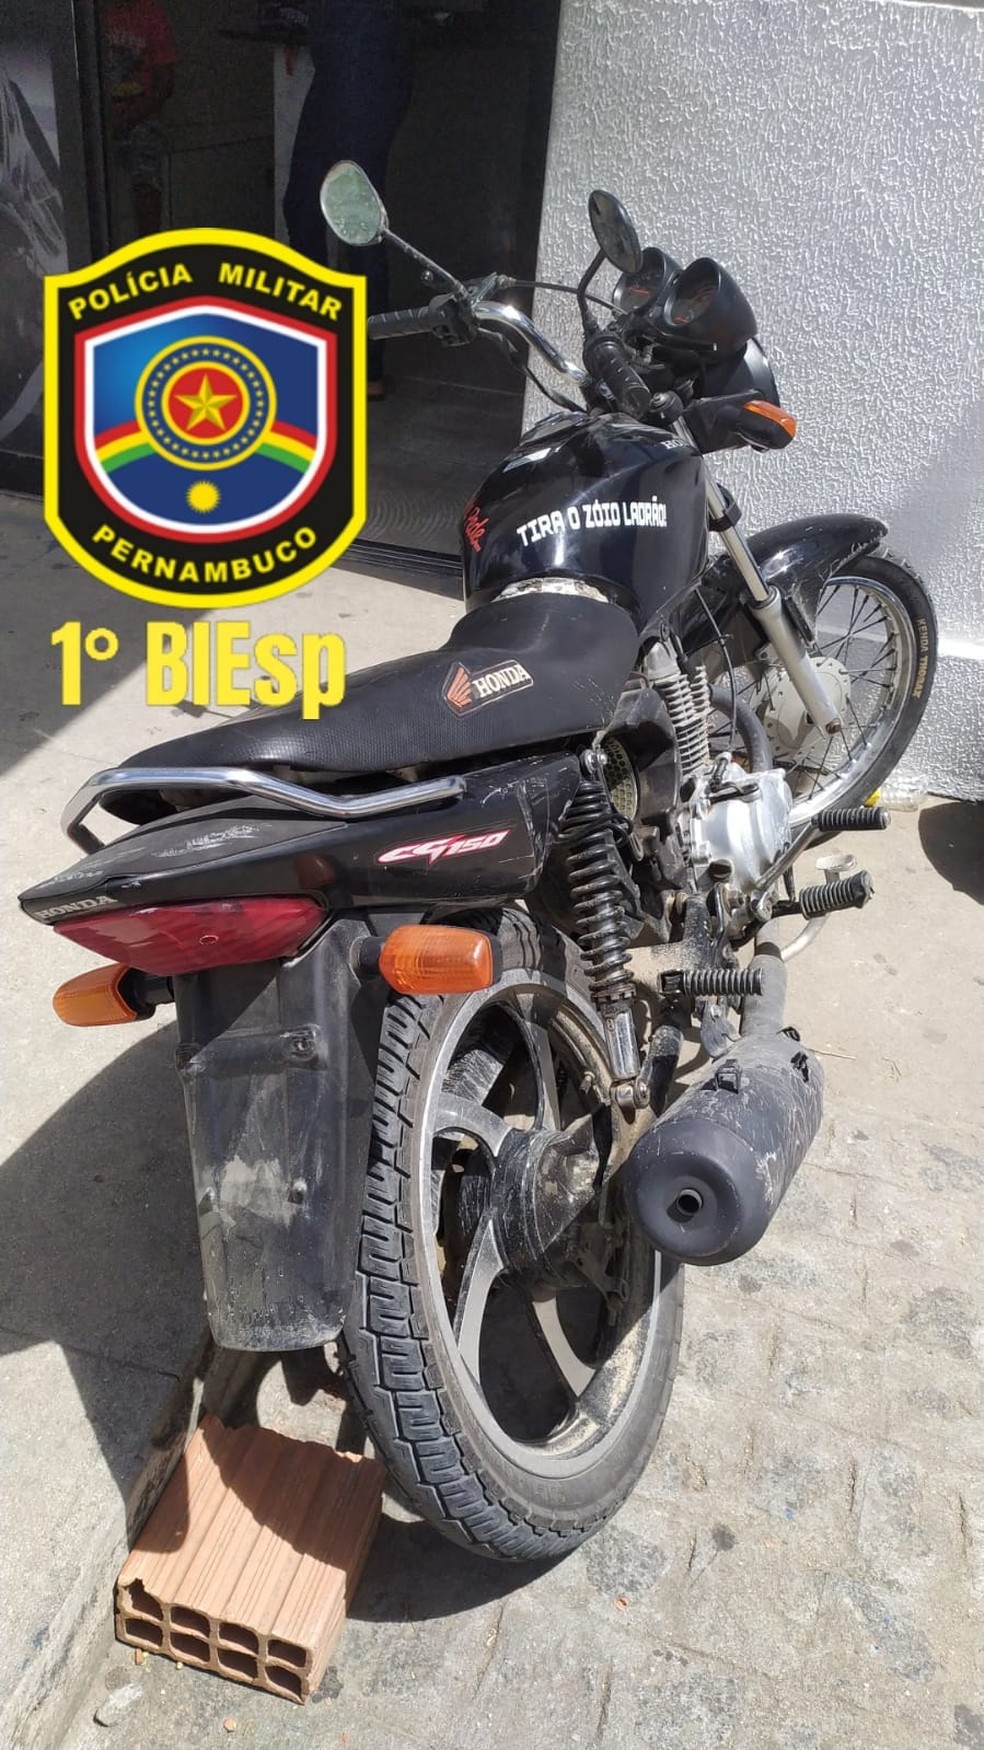 Moto apreendida pela Polícia Militar em Caruaru — Foto: Polícia Militar